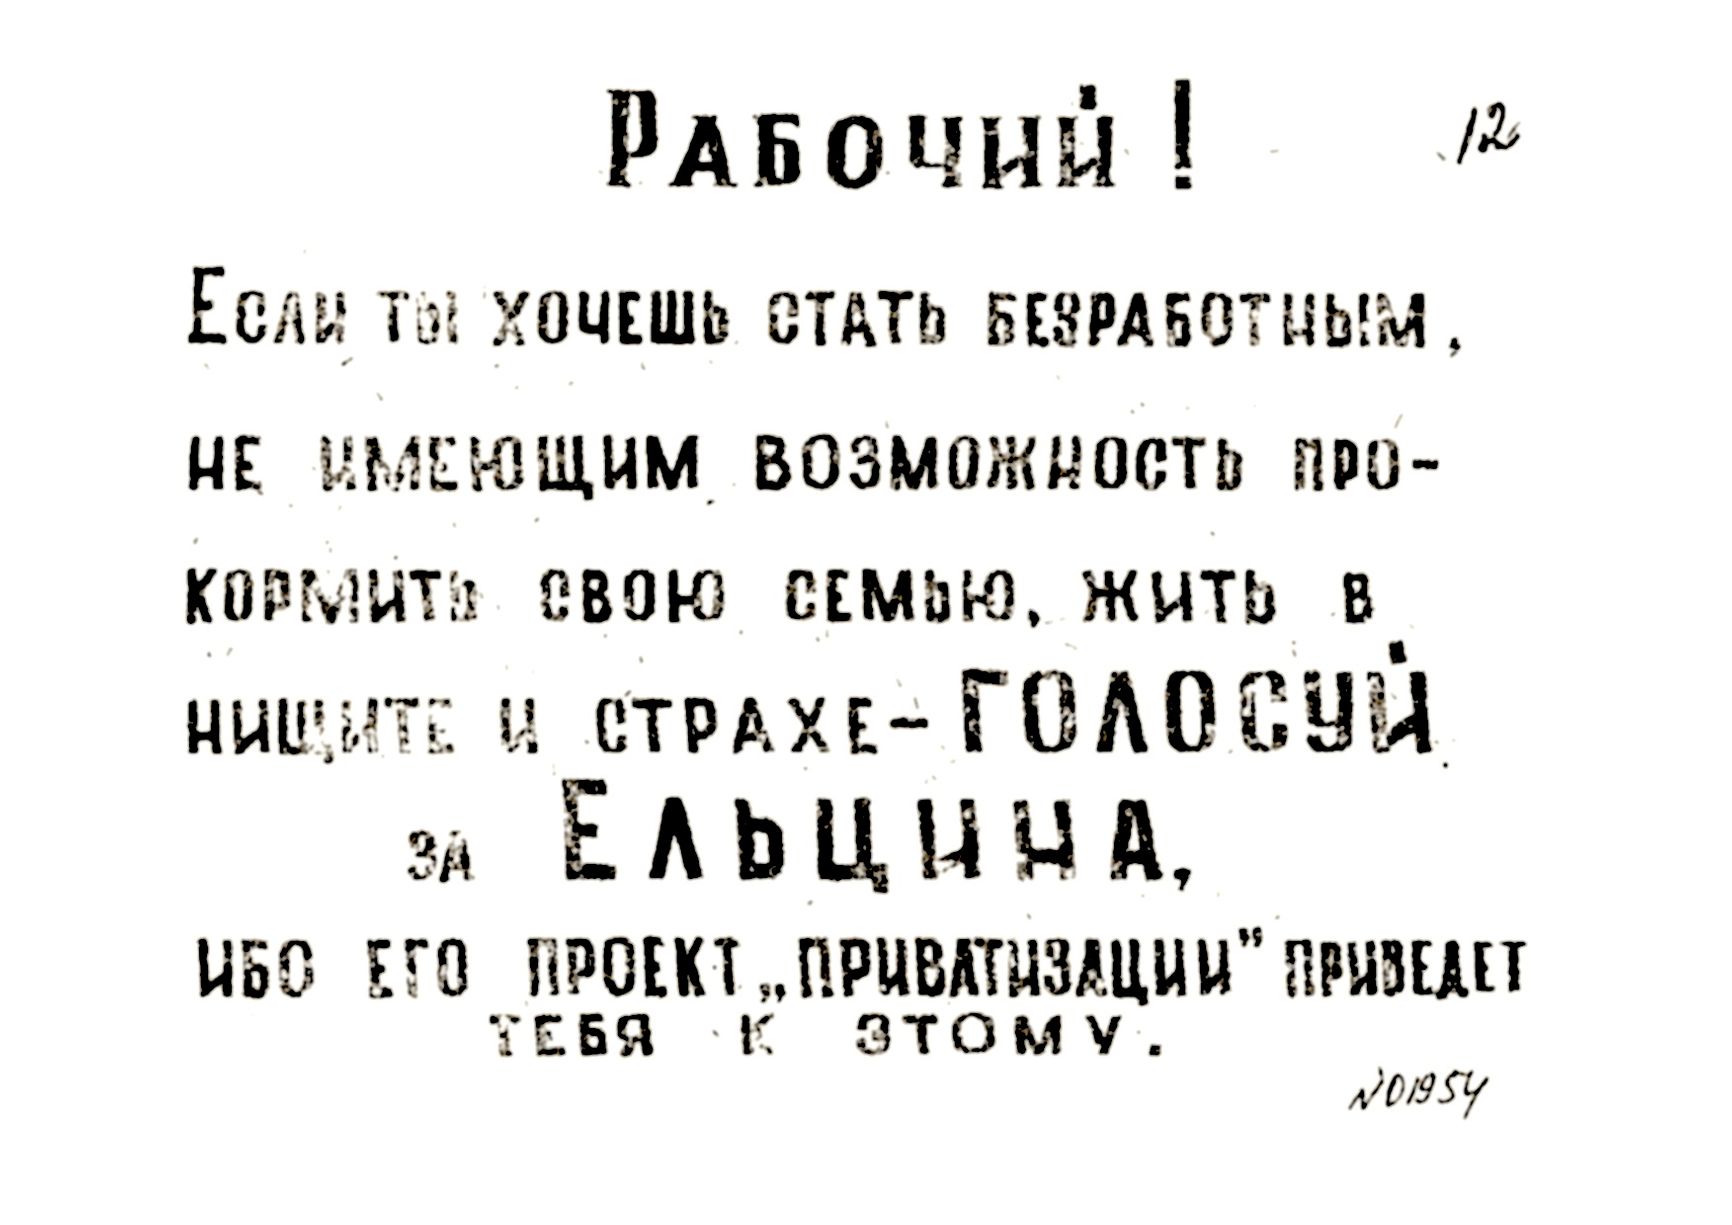 Листовка против Ельцина, 1991 г. Из личного фонда Б.Н.Ельцина из архива президента Российской федерации